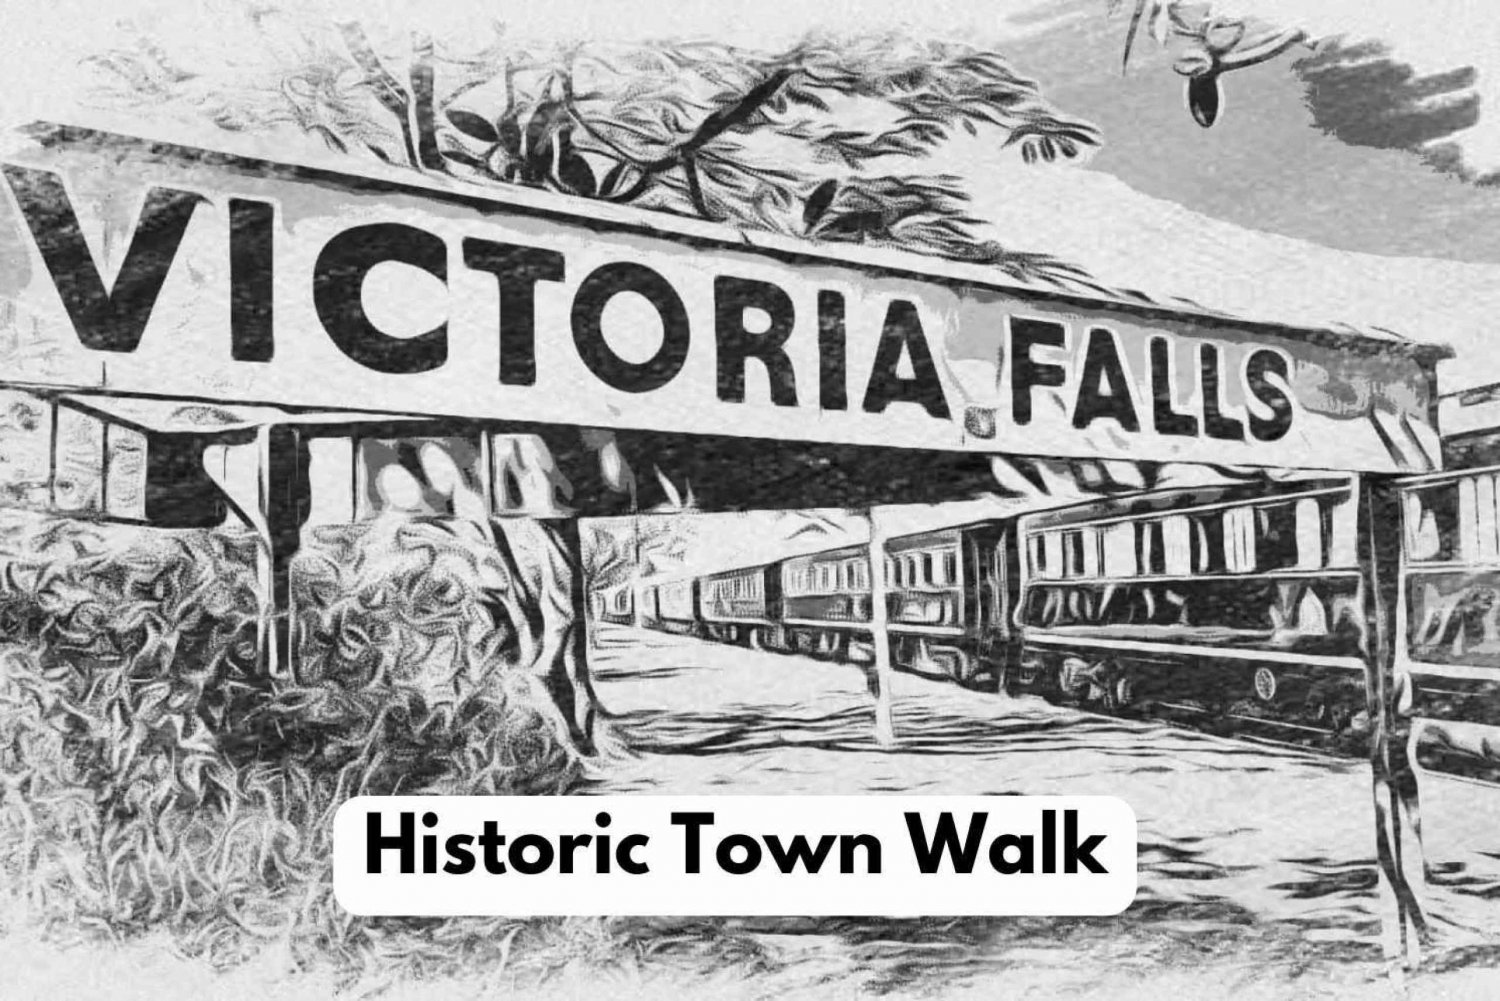 Cataratas Vitória: Passeio pela cidade histórica + caminhada pela mata